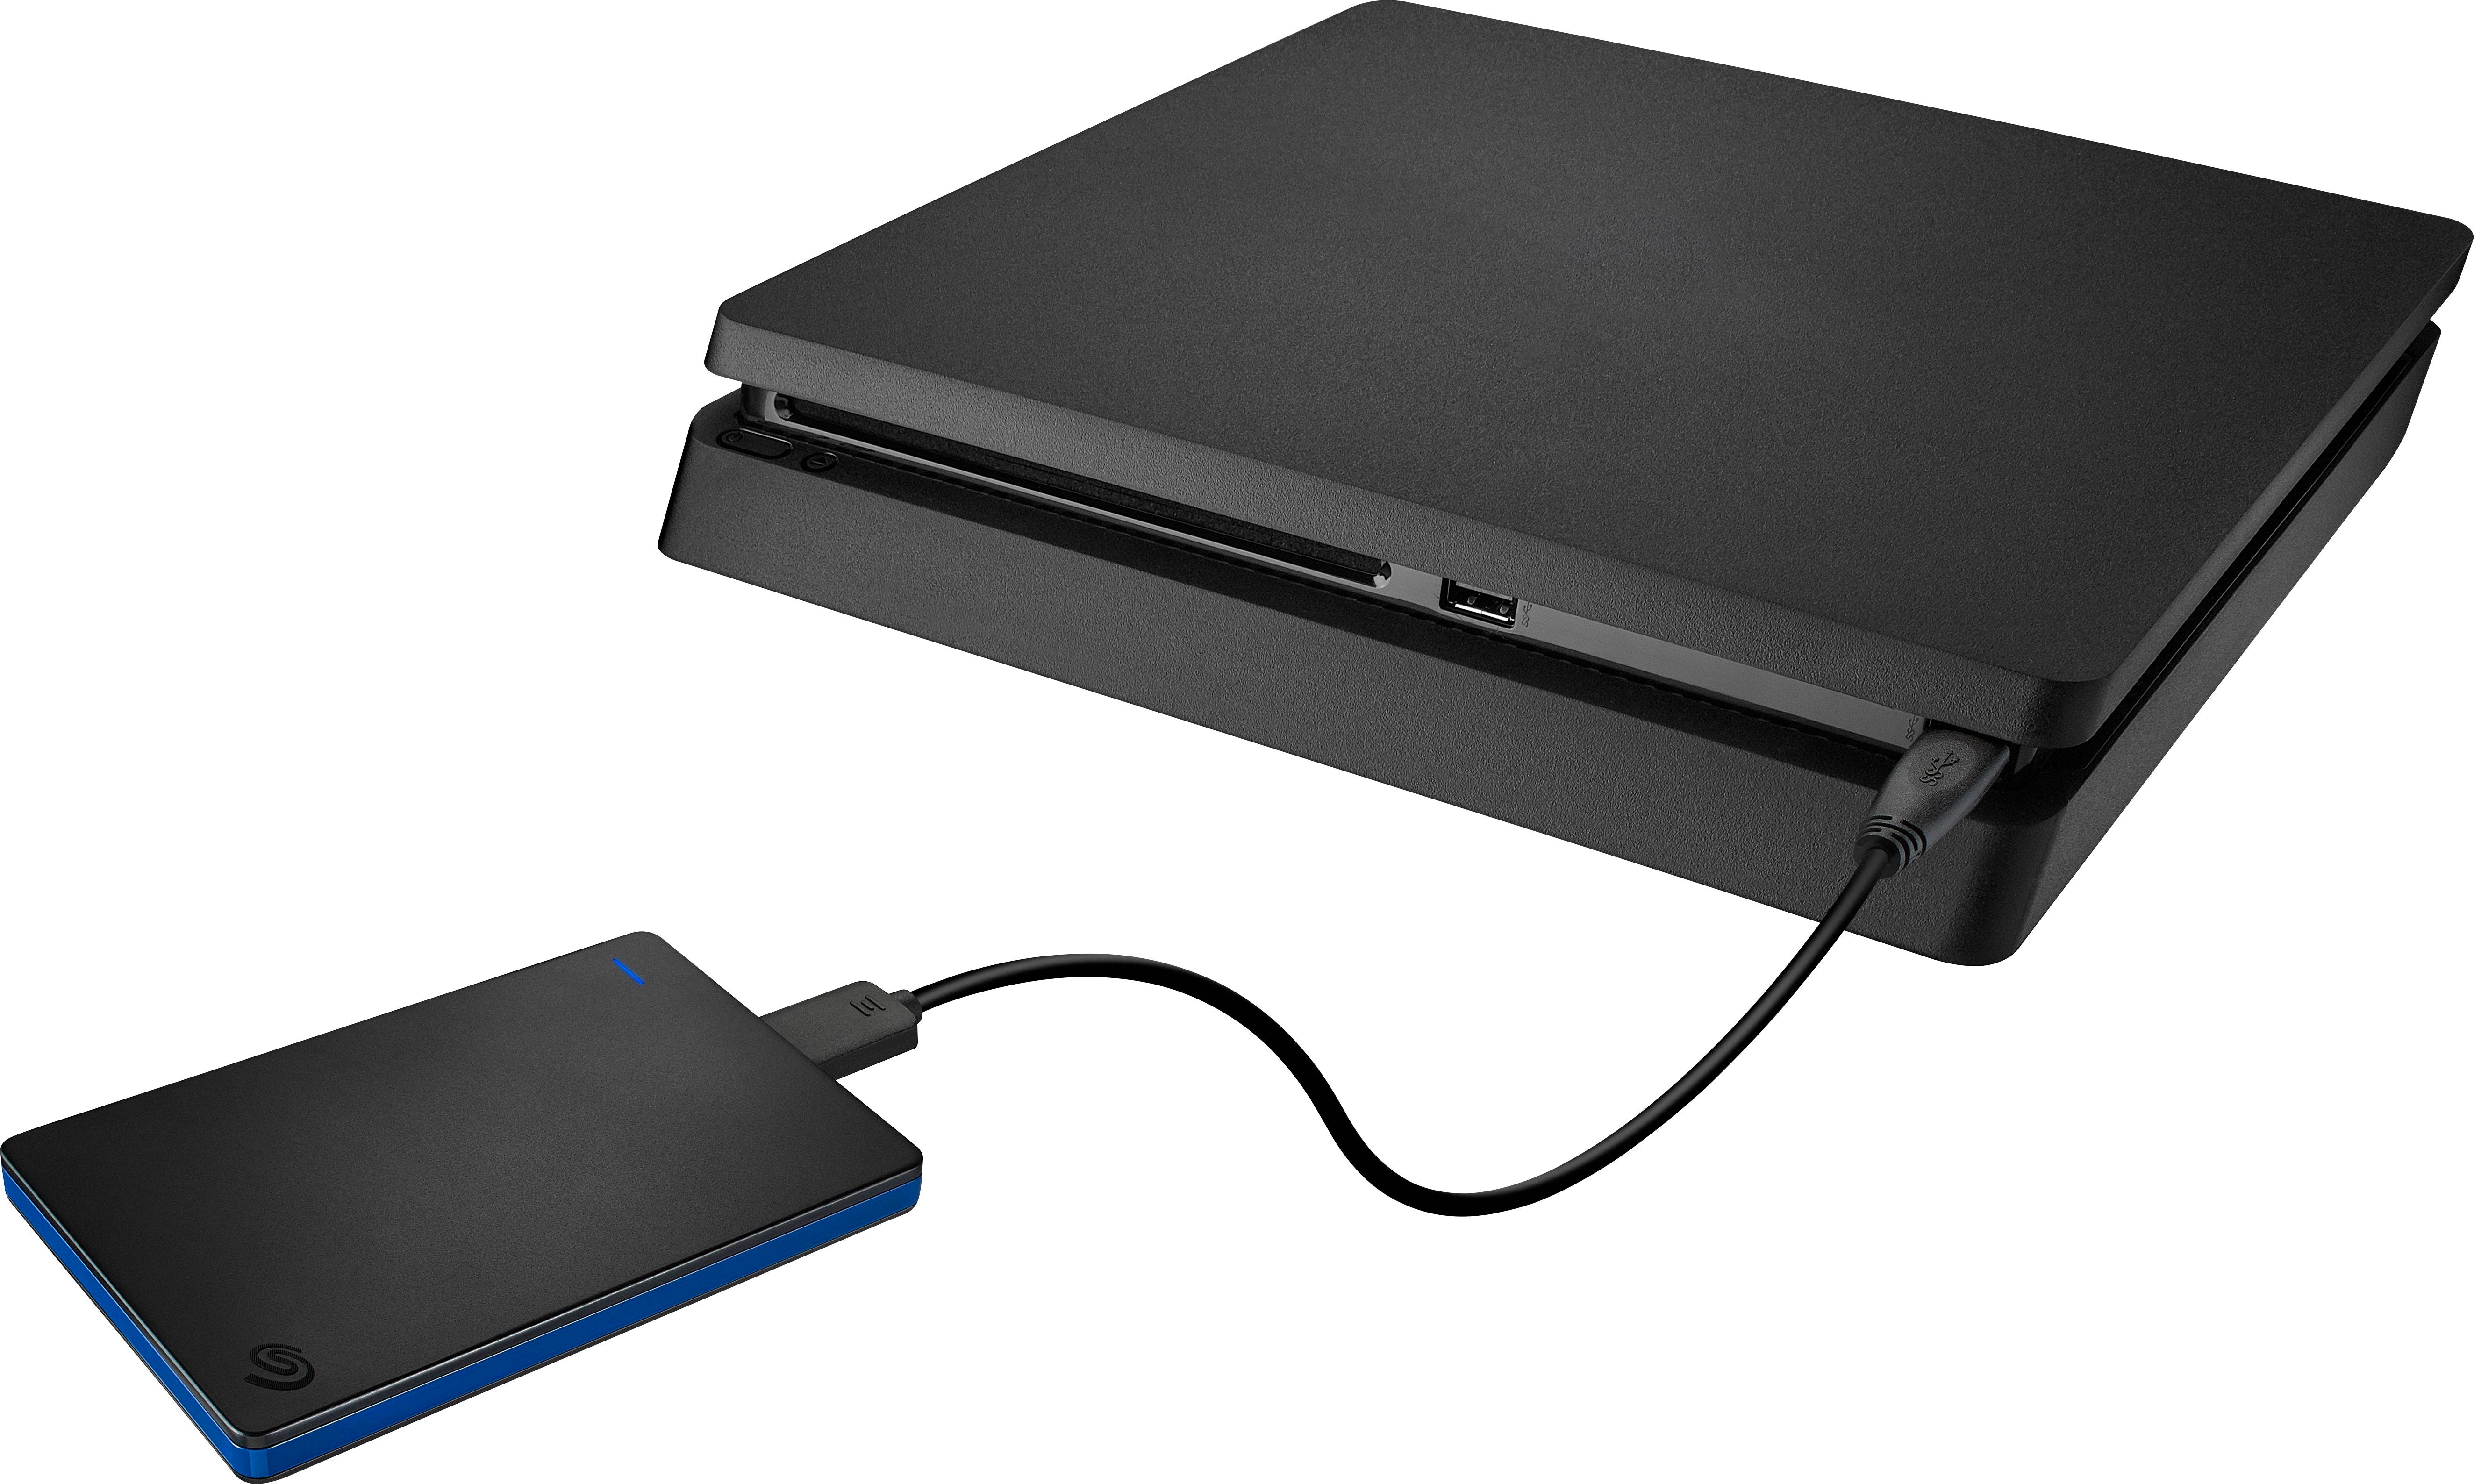 Disco duro externo de Seagate compatible con PlayStation 4